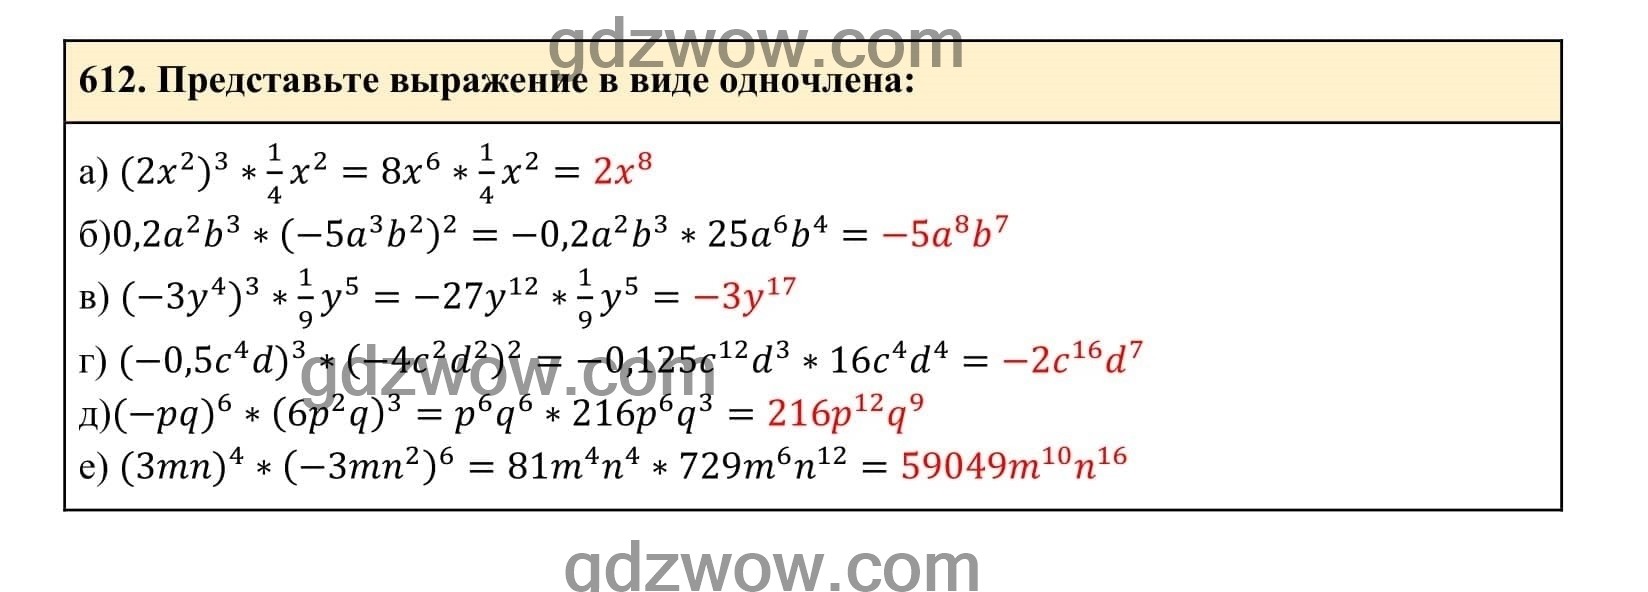 Упражнение 612 - ГДЗ по Алгебре 7 класс Учебник Макарычев (решебник) - GDZwow